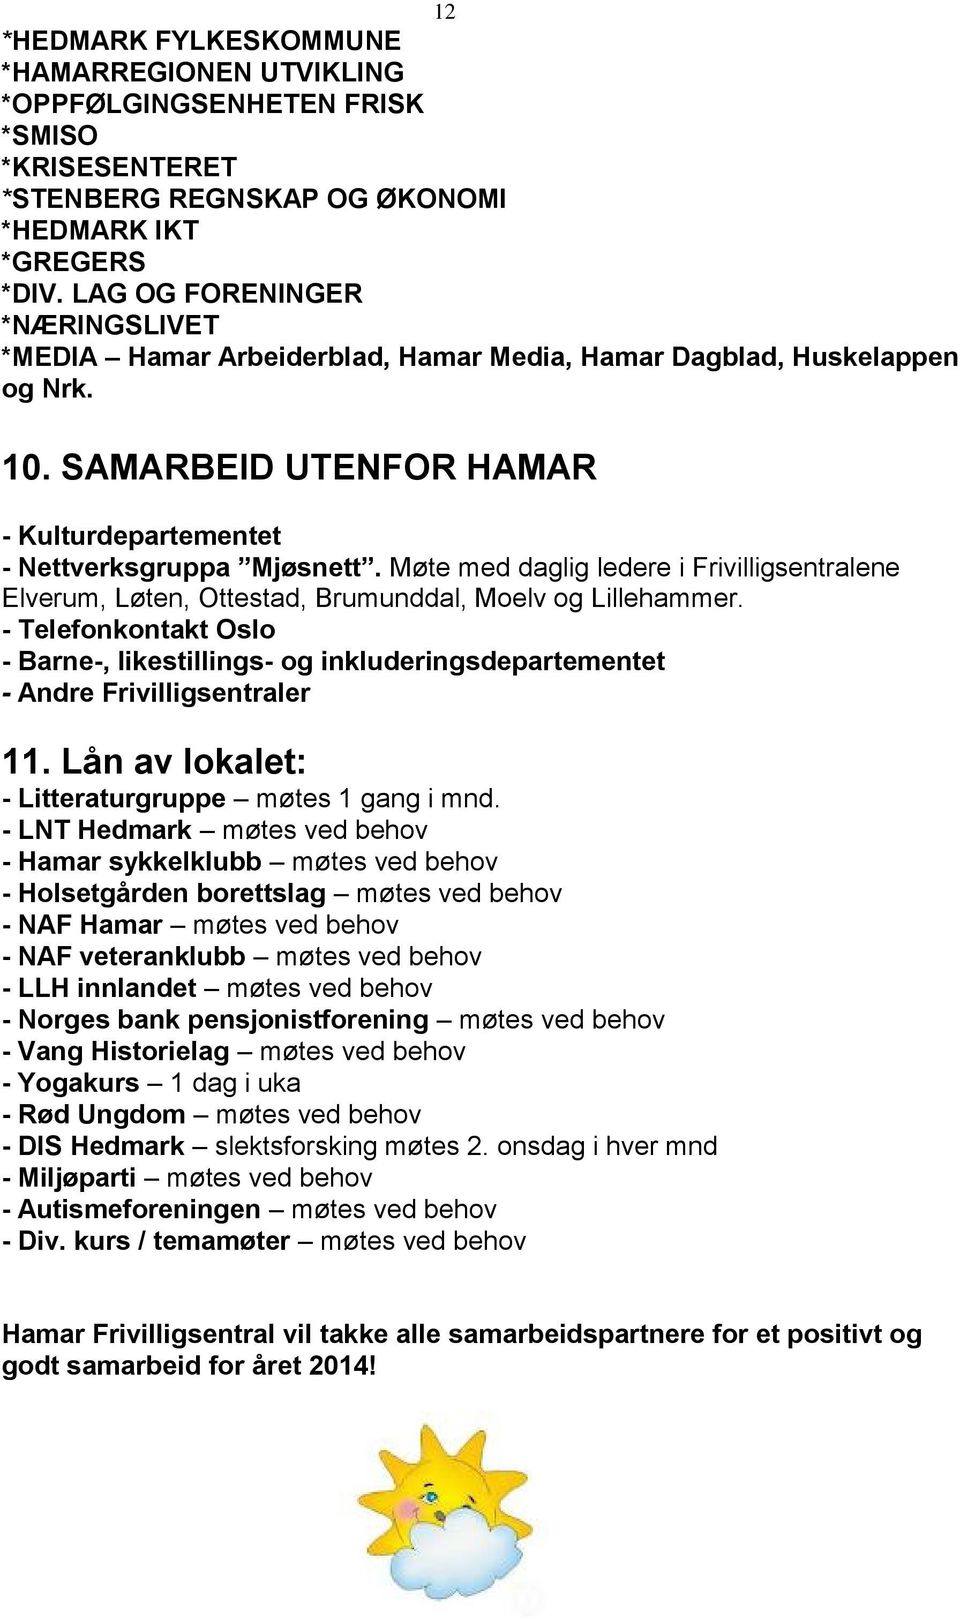 Møte med daglig ledere i Frivilligsentralene Elverum, Løten, Ottestad, Brumunddal, Moelv og Lillehammer.